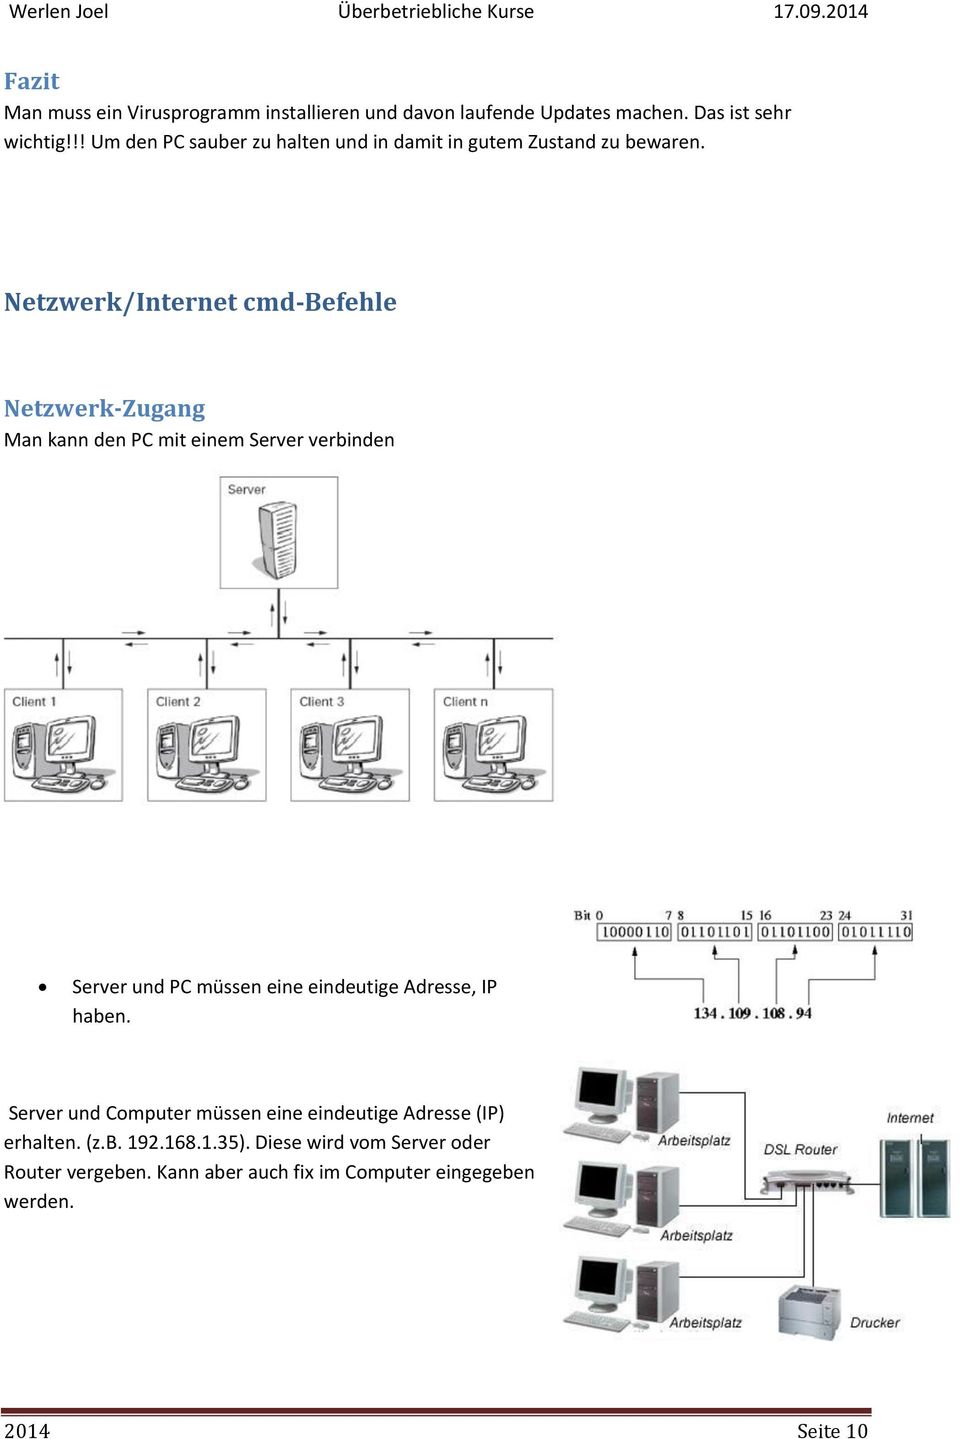 Netzwerk/Internet cmd-befehle Netzwerk-Zugang Man kann den PC mit einem Server verbinden Server und PC müssen eine eindeutige